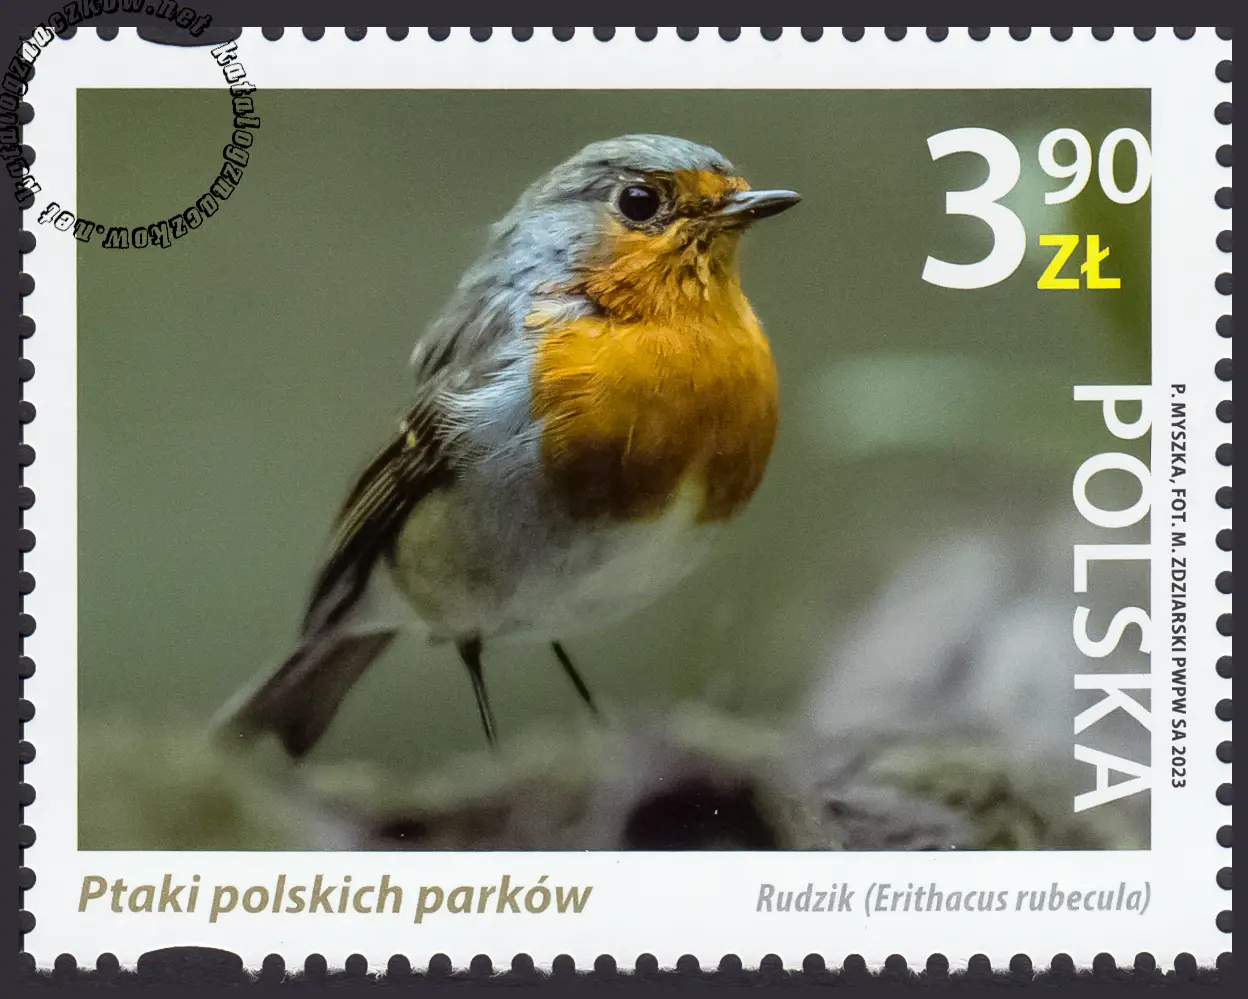 Ptaki polskich parków znaczek nr 5290